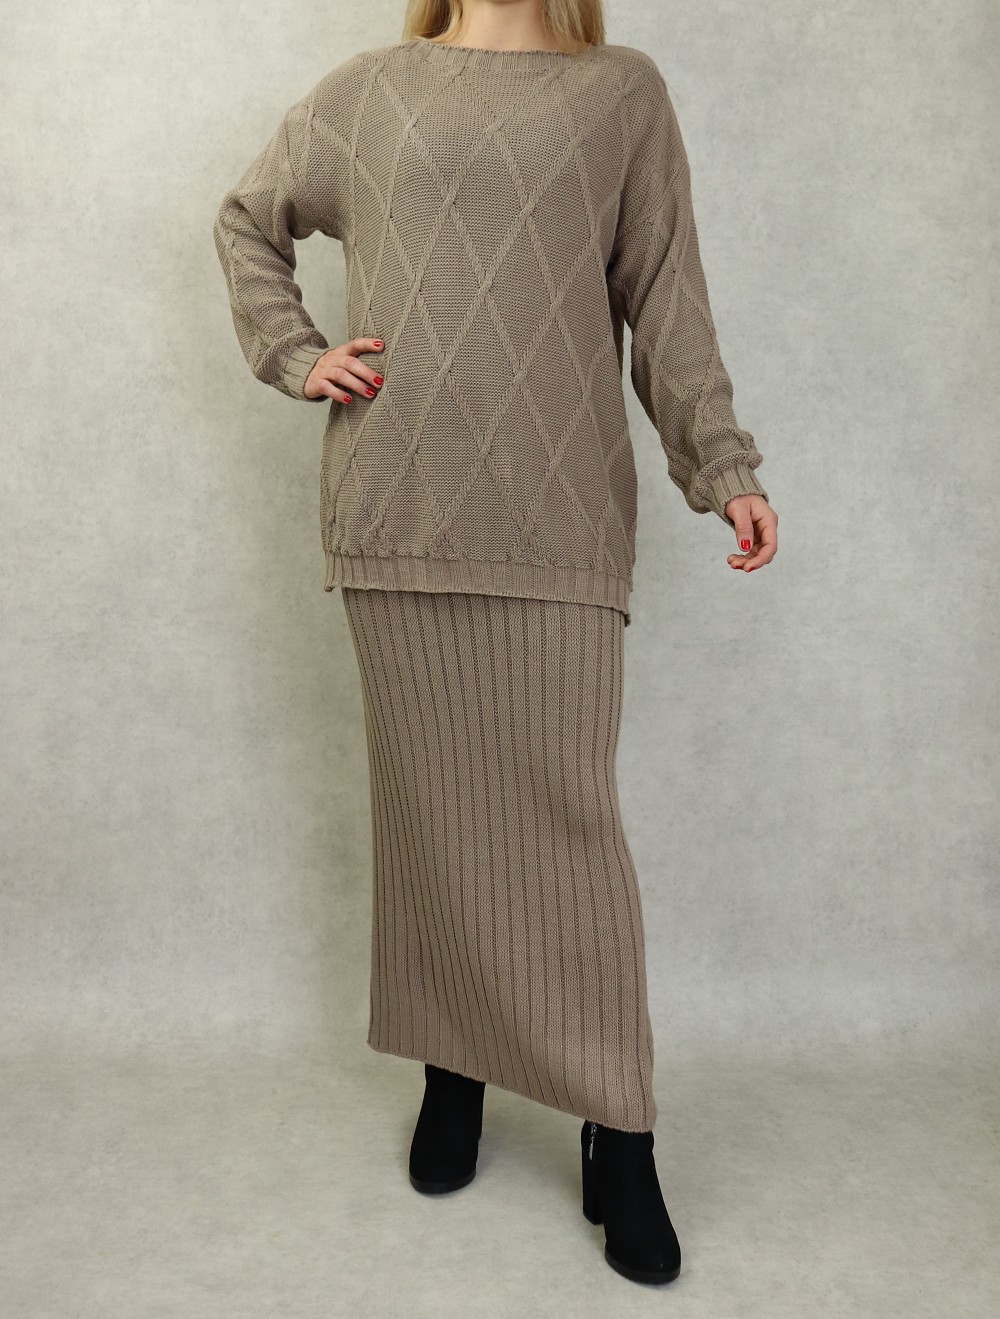 Ensemble en maille deux pièces tunique et jupe pour femme (Saison  Automne-Hiver) - Couleur Taupe